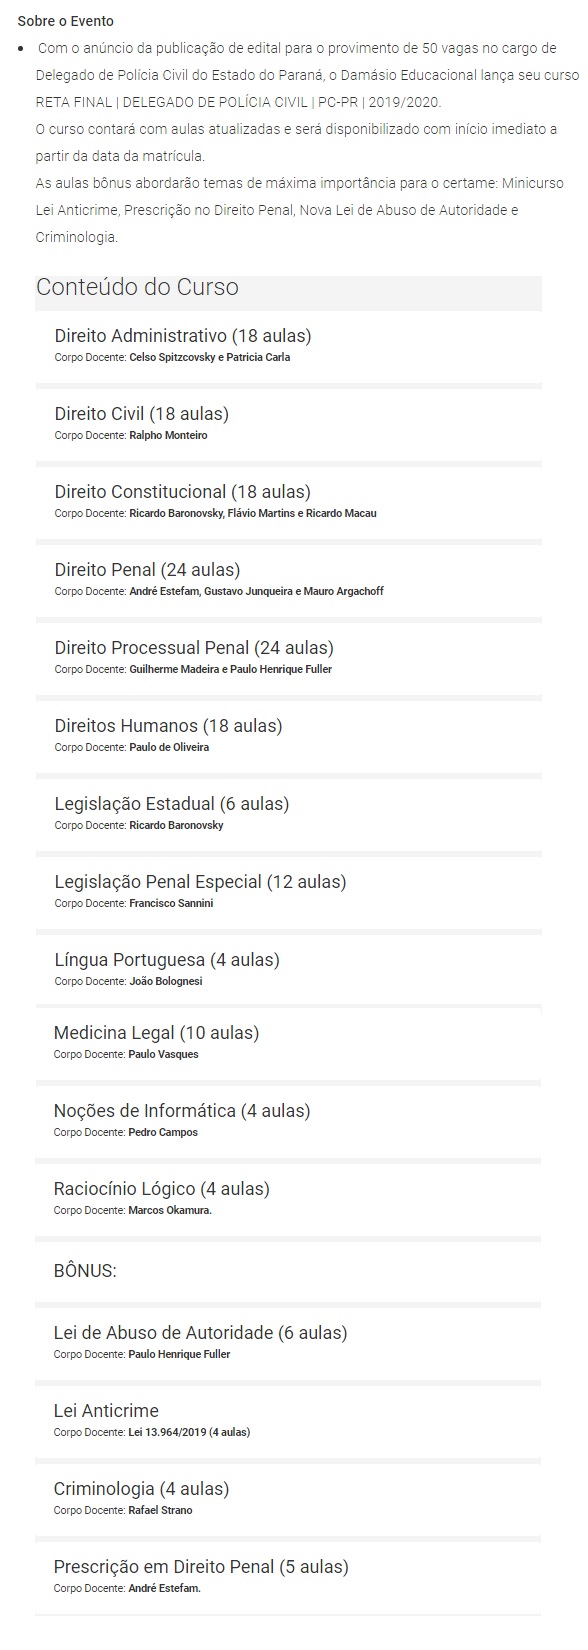 PC PR - Delegado Civil - Reta Final (PÓS EDITAL) (DAMÁSIO 2020) Polícia Civil do Paraná 4